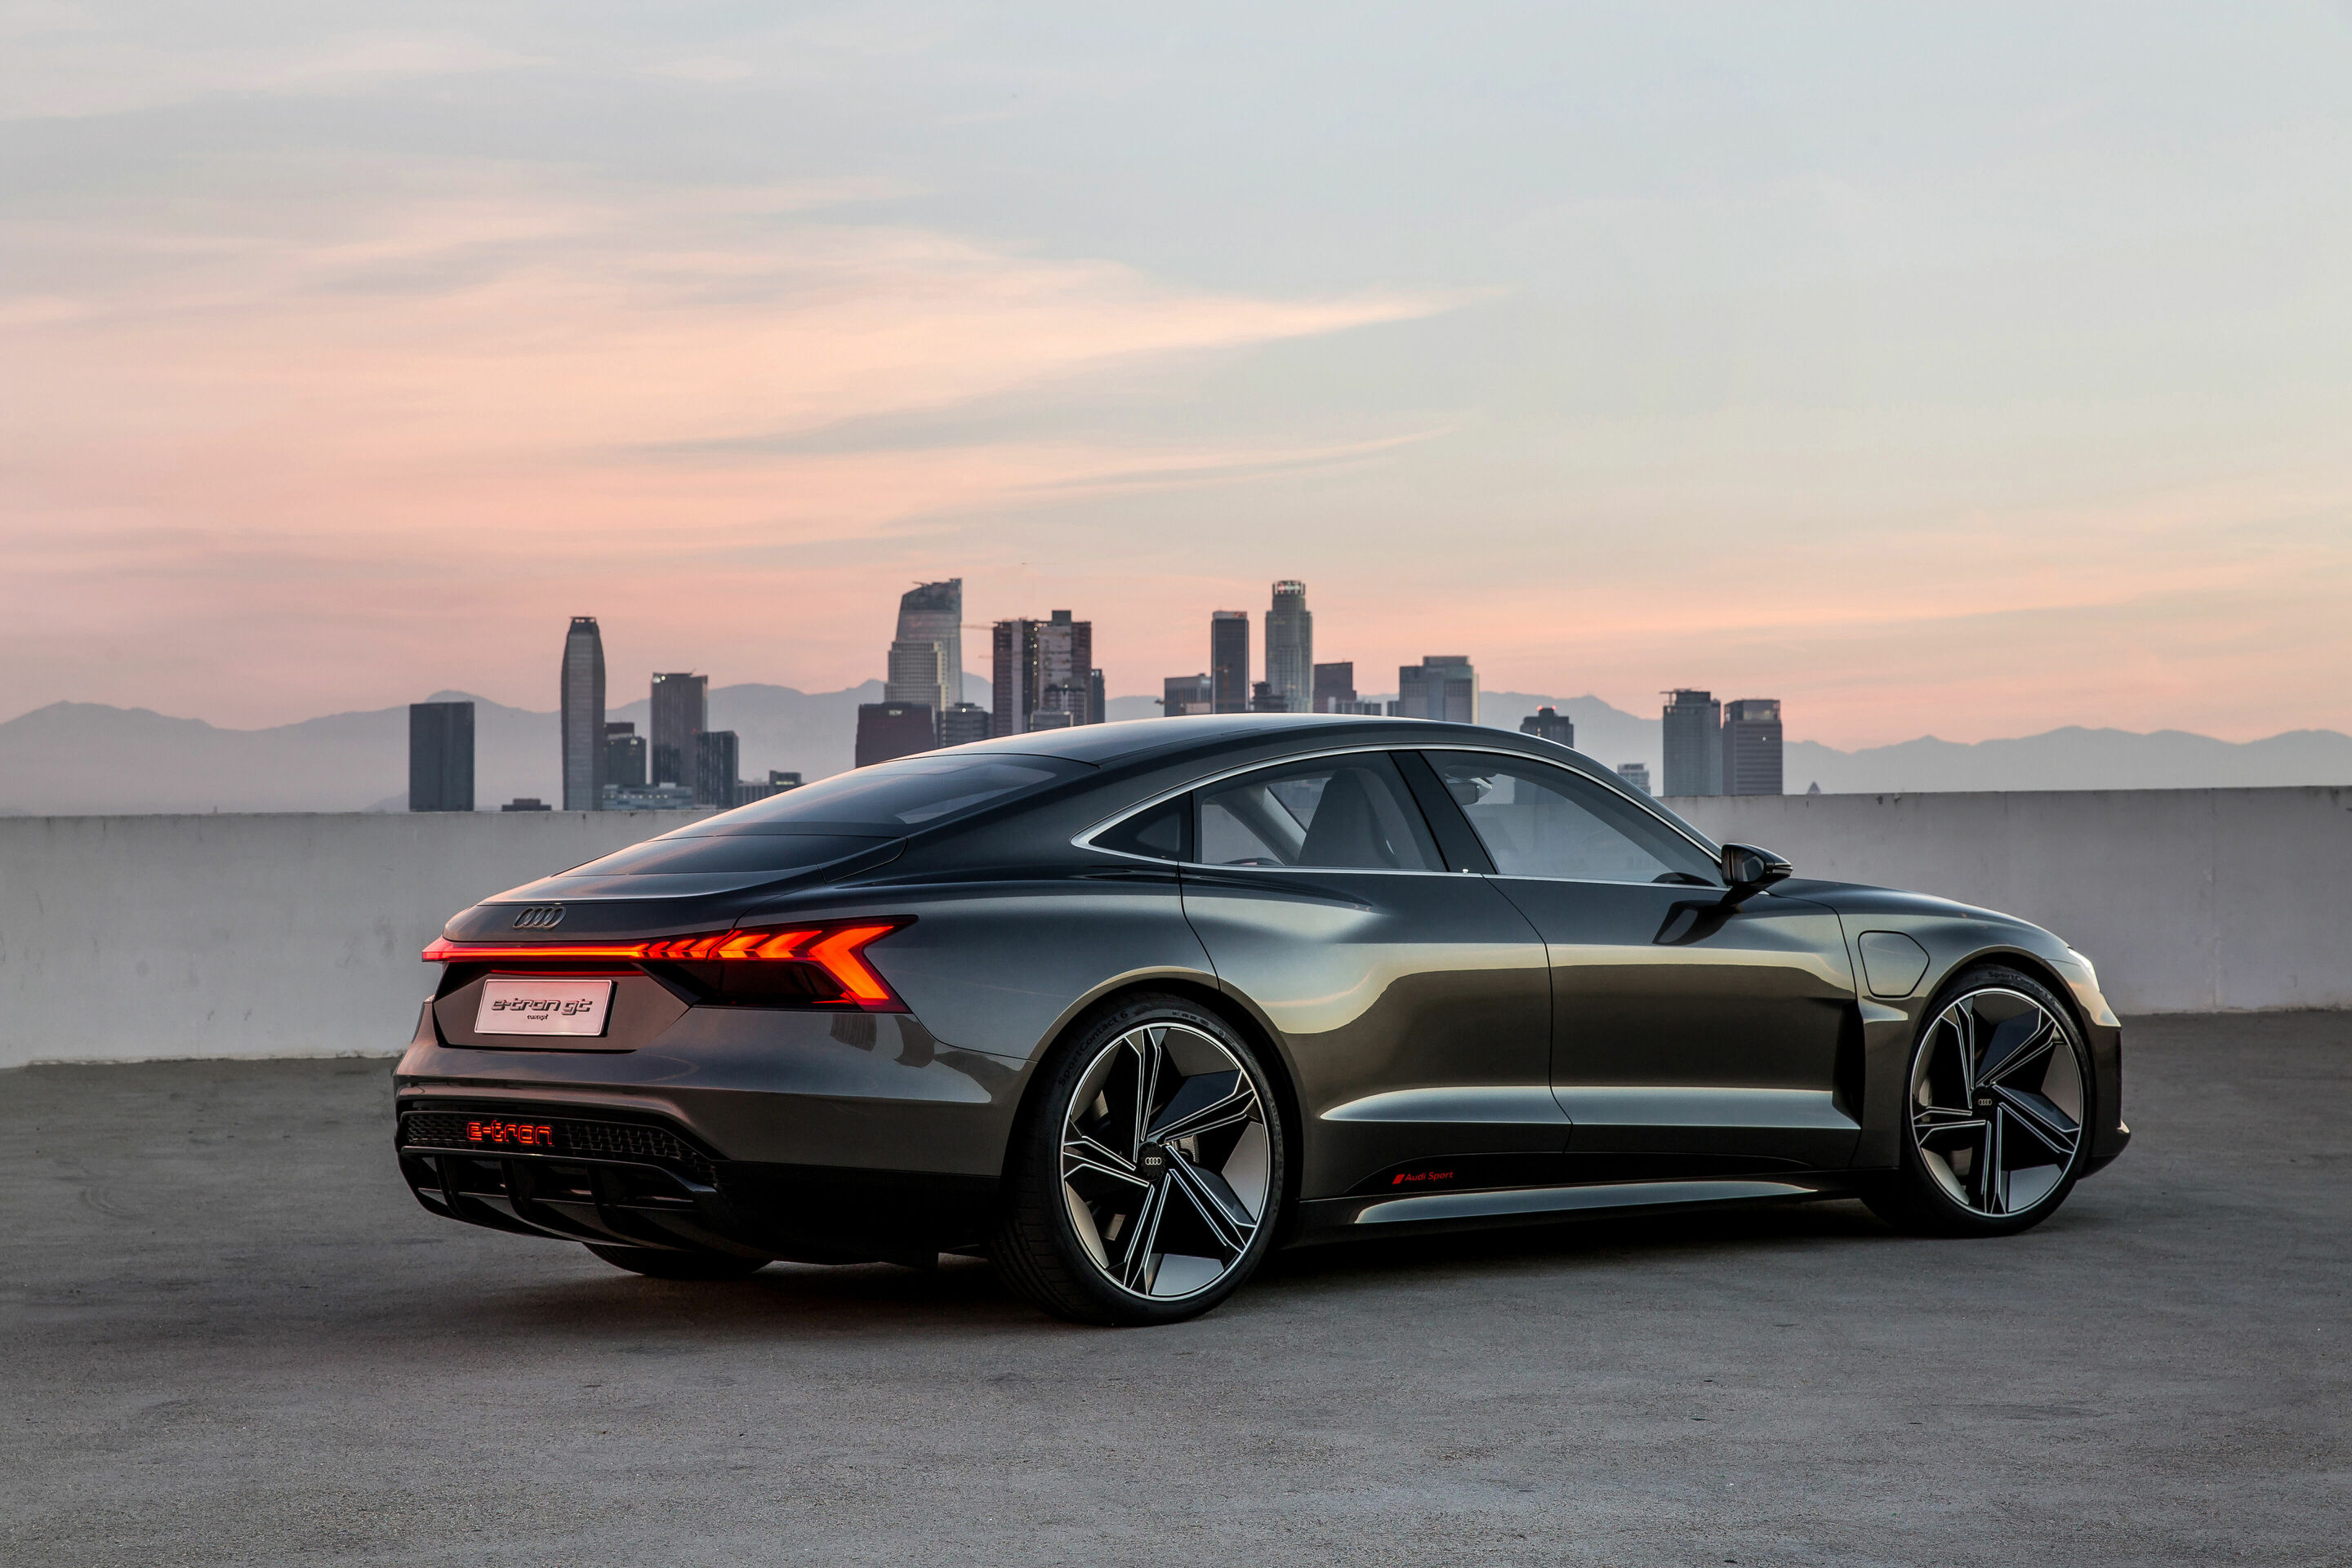 Neuer Star in der Filmmetropole – der Audi e-tron GT concept